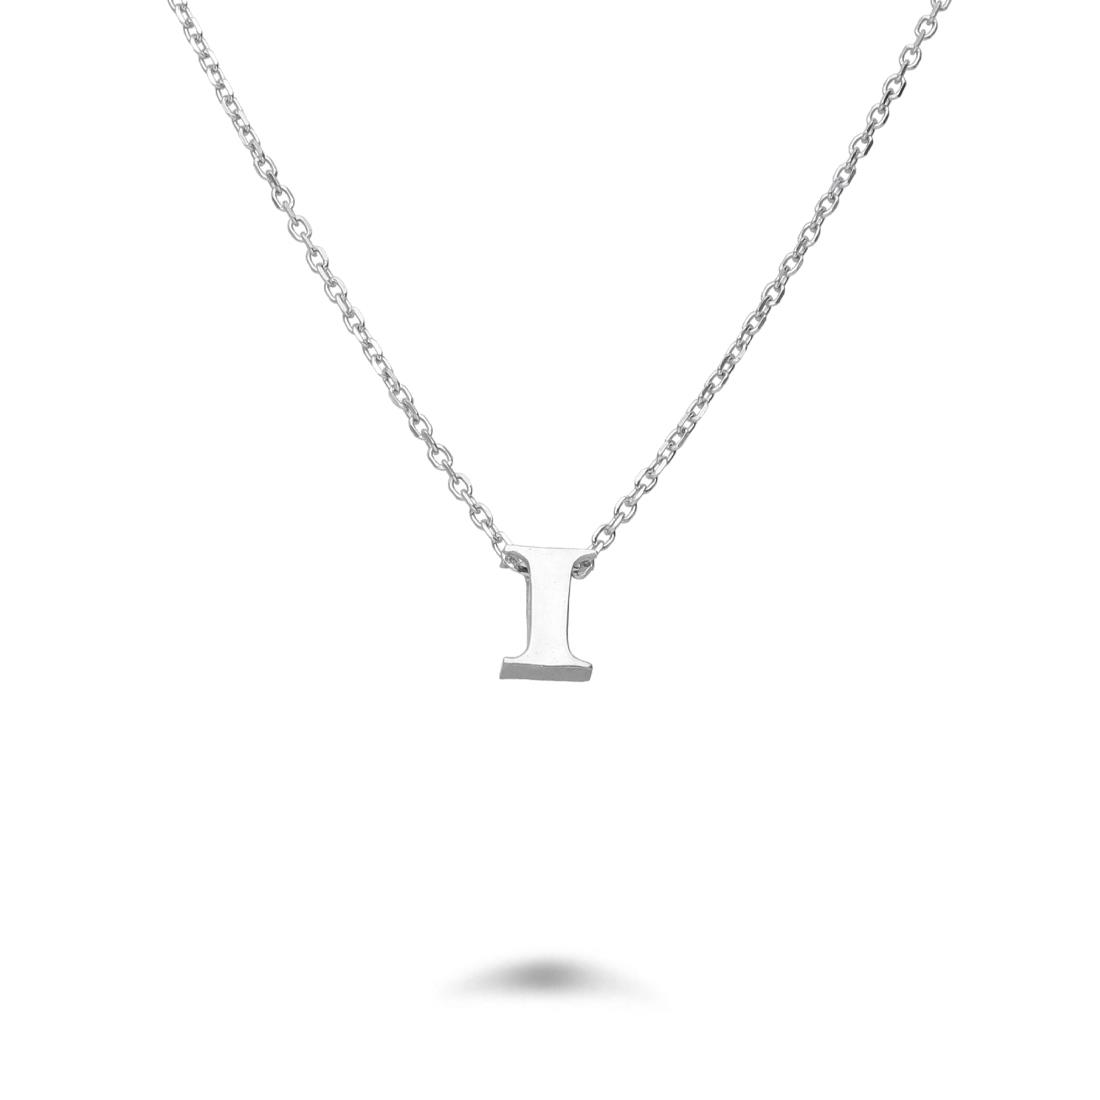 Rolò necklace in rhodium-plated silver with letter I - DESIDERI PREZIOSI